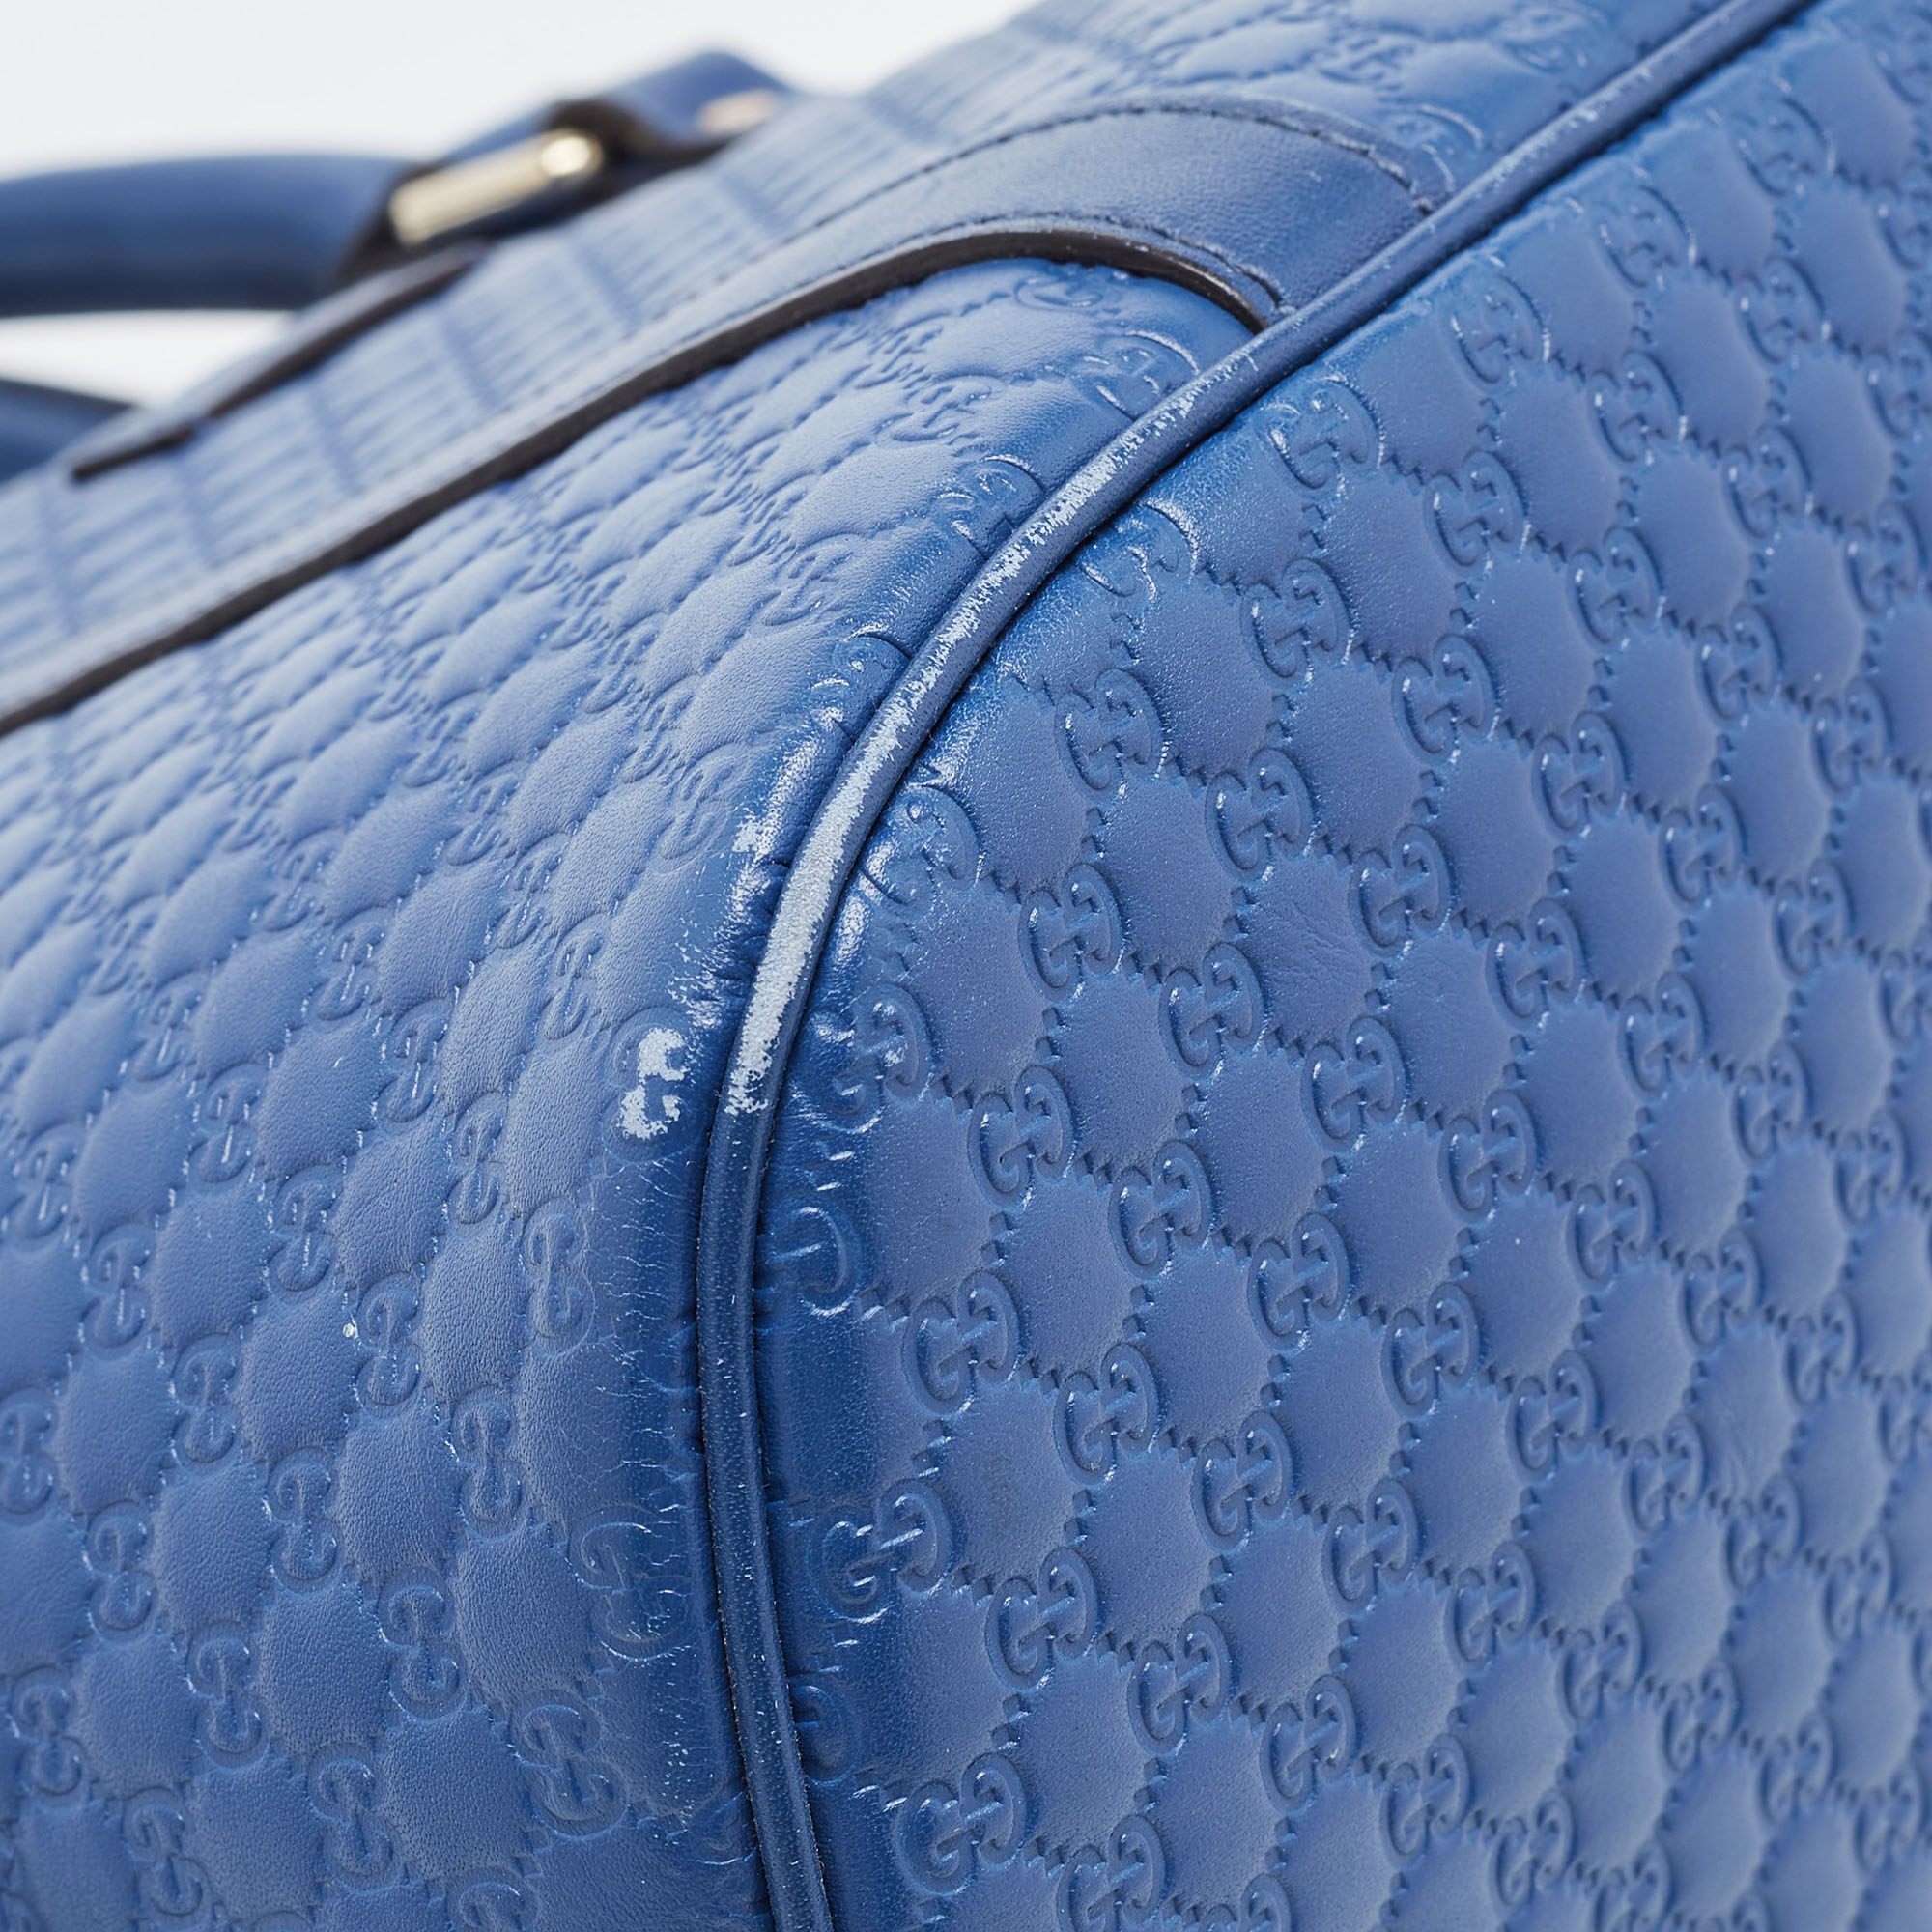 Gucci Blue Microguccissima Leather Medium Dome Bag